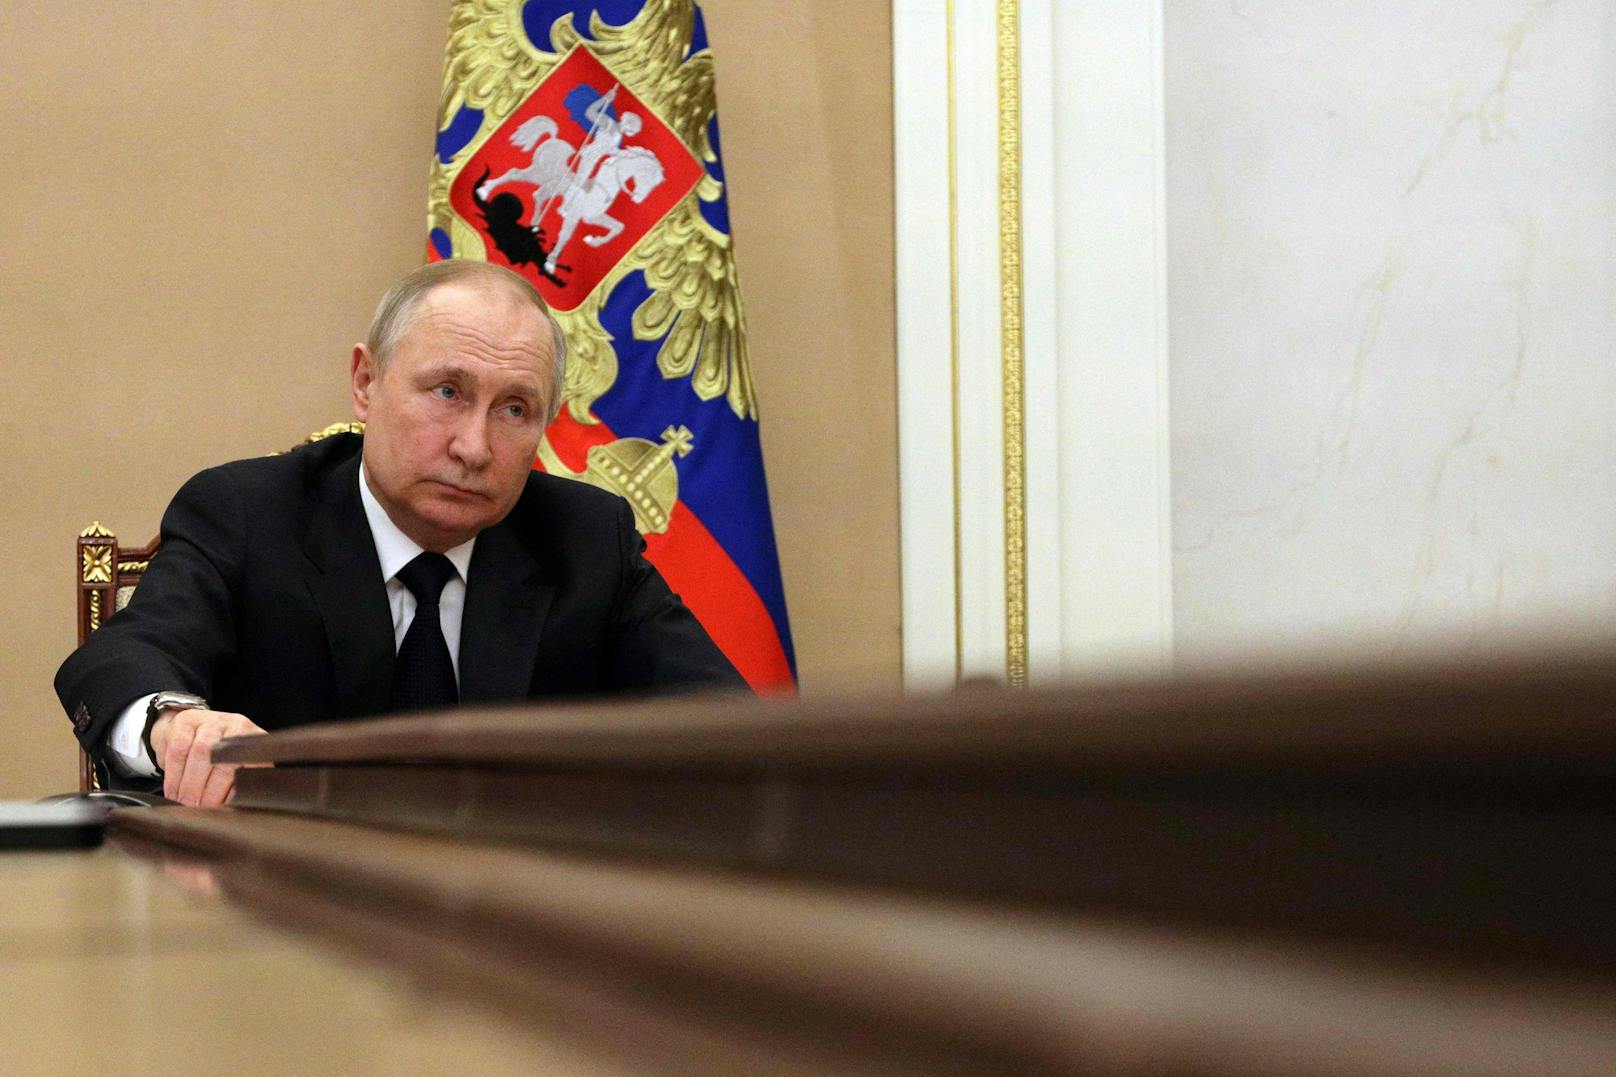 Wackelt Putins Griff nach der Ukraine? Das Land sieht einen "Wendepunkt" gekommen.